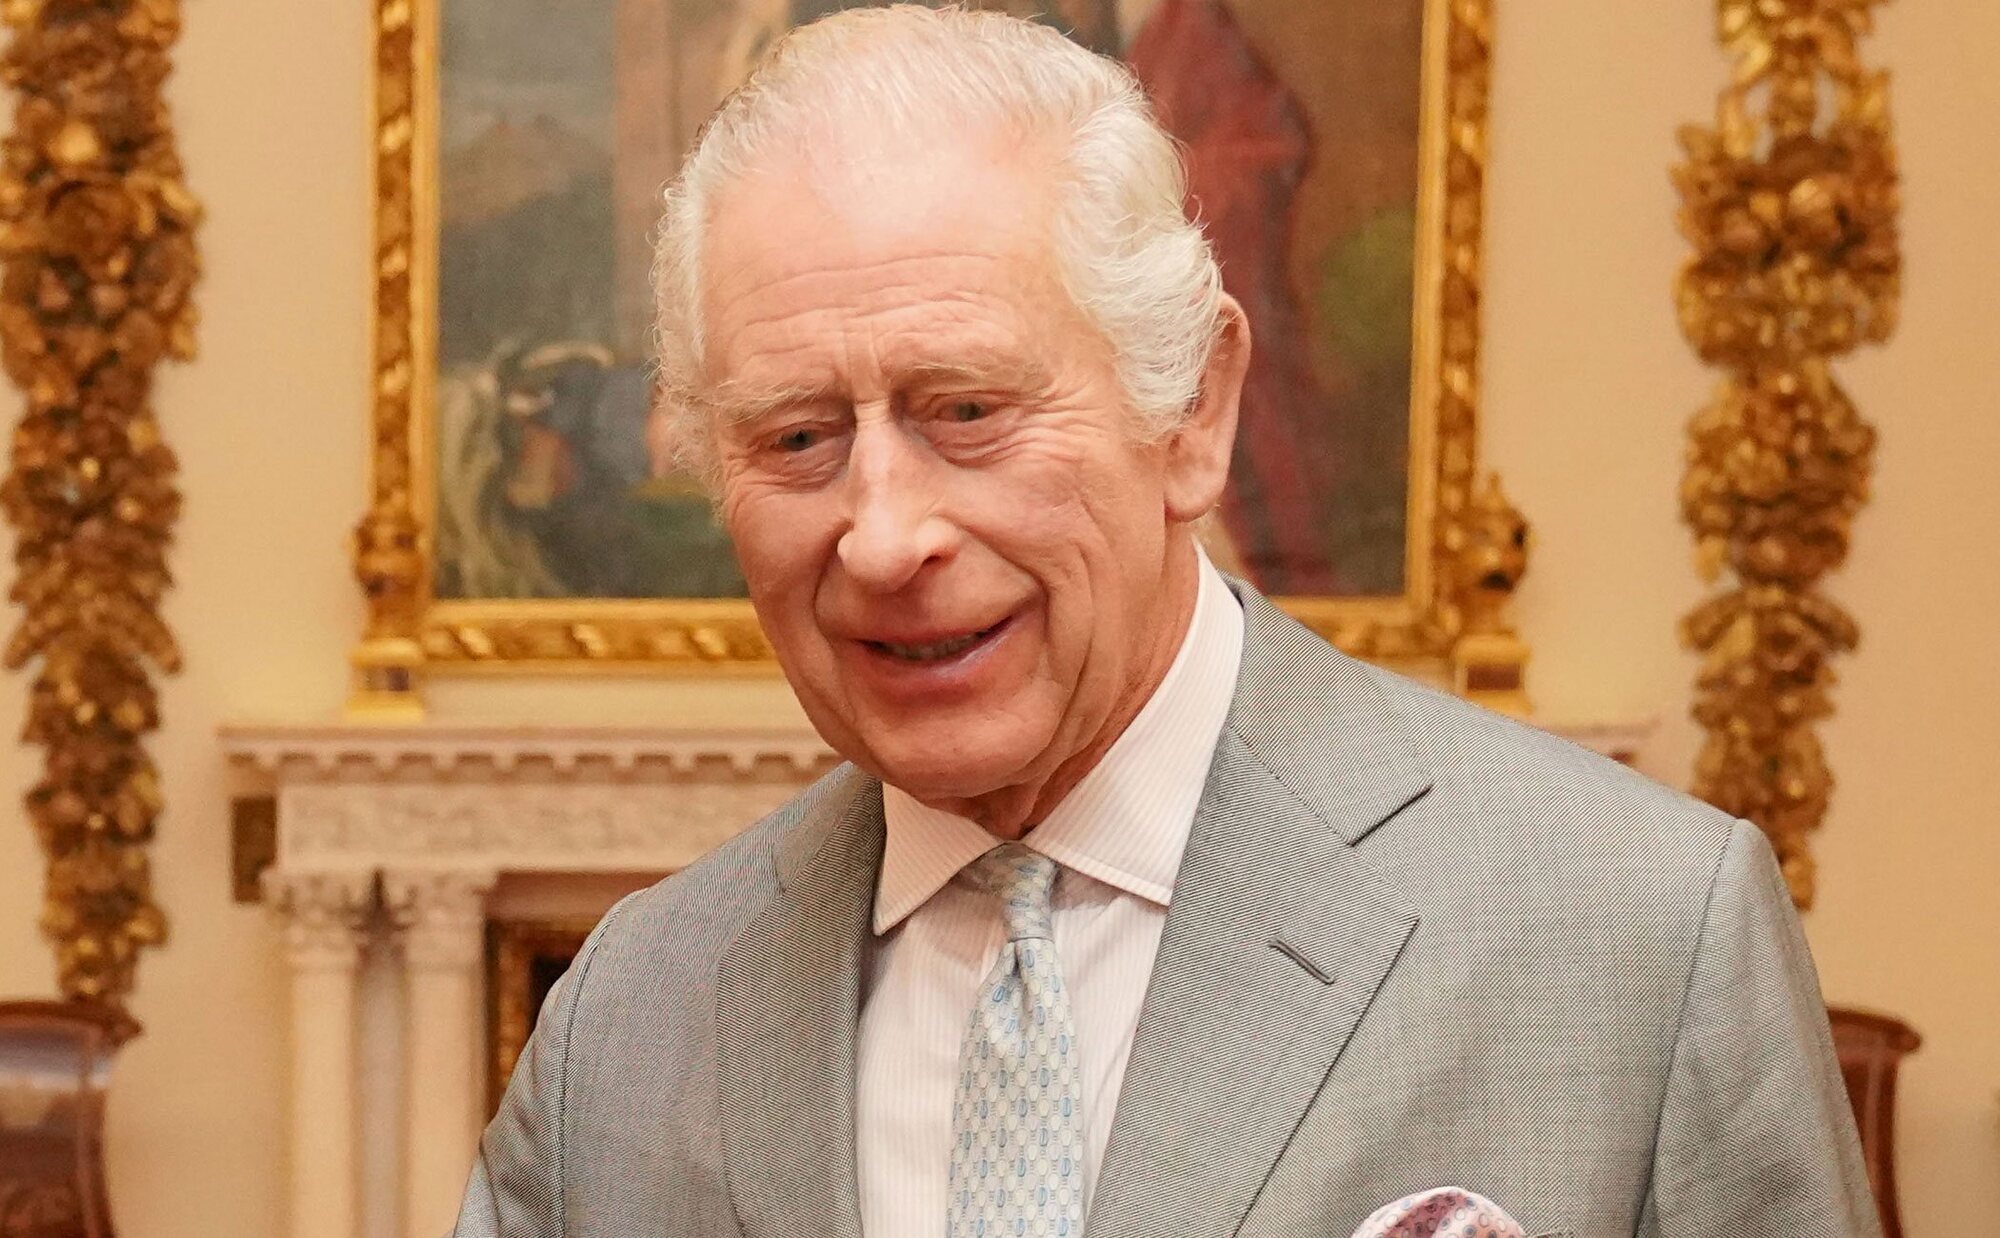 Los dos gestos del Rey Carlos III que muestran que se va encontrando mejor del cáncer que padece